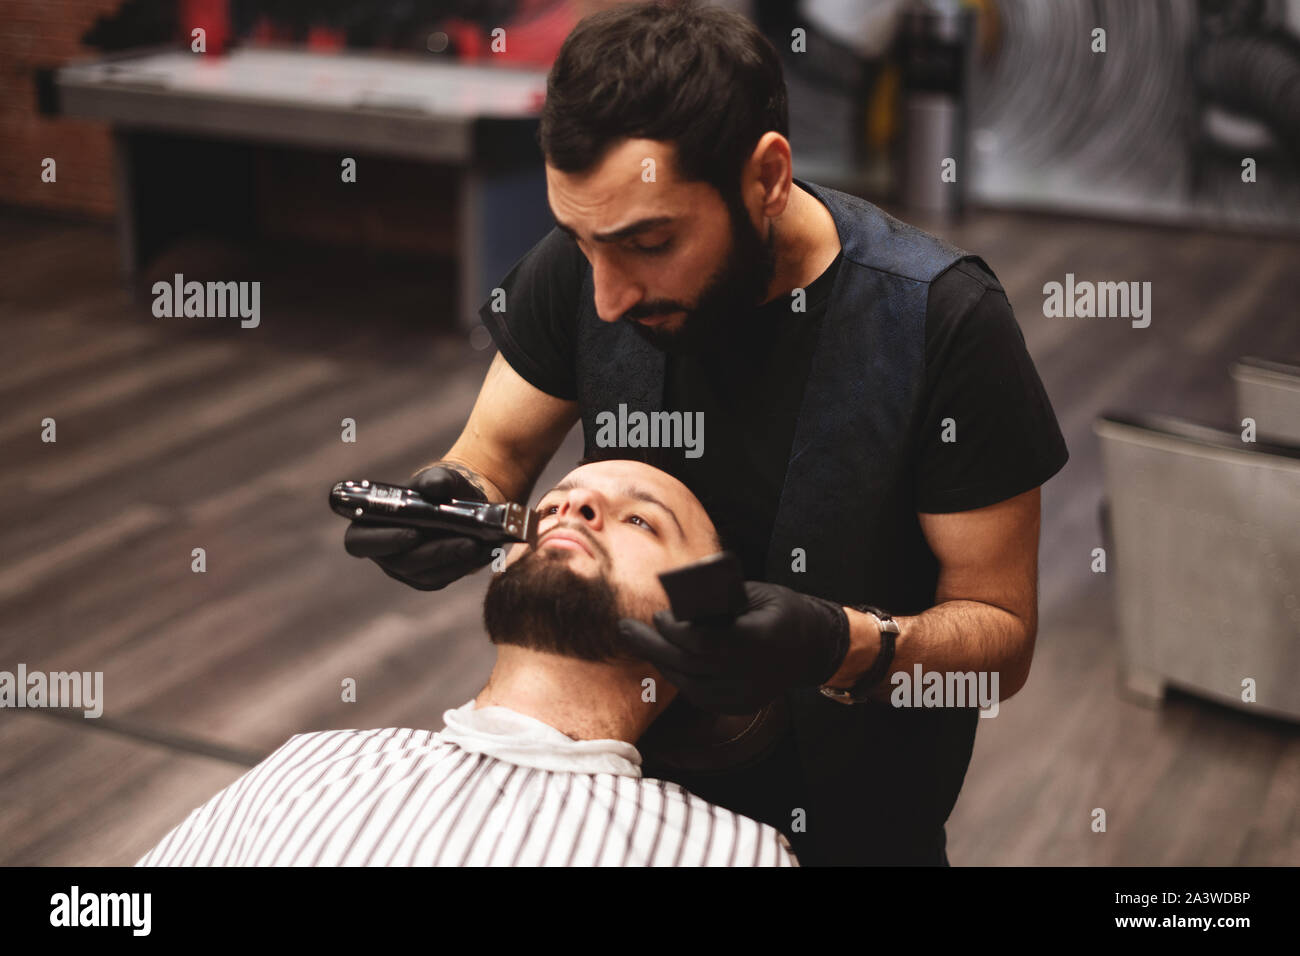 Le rasage de la barbe dans un salon de coiffure avec un dangereux rasoir.  Salon de coiffure pour les soins de la barbe. Le séchage, couper, couper la  barbe. Selective focus Photo